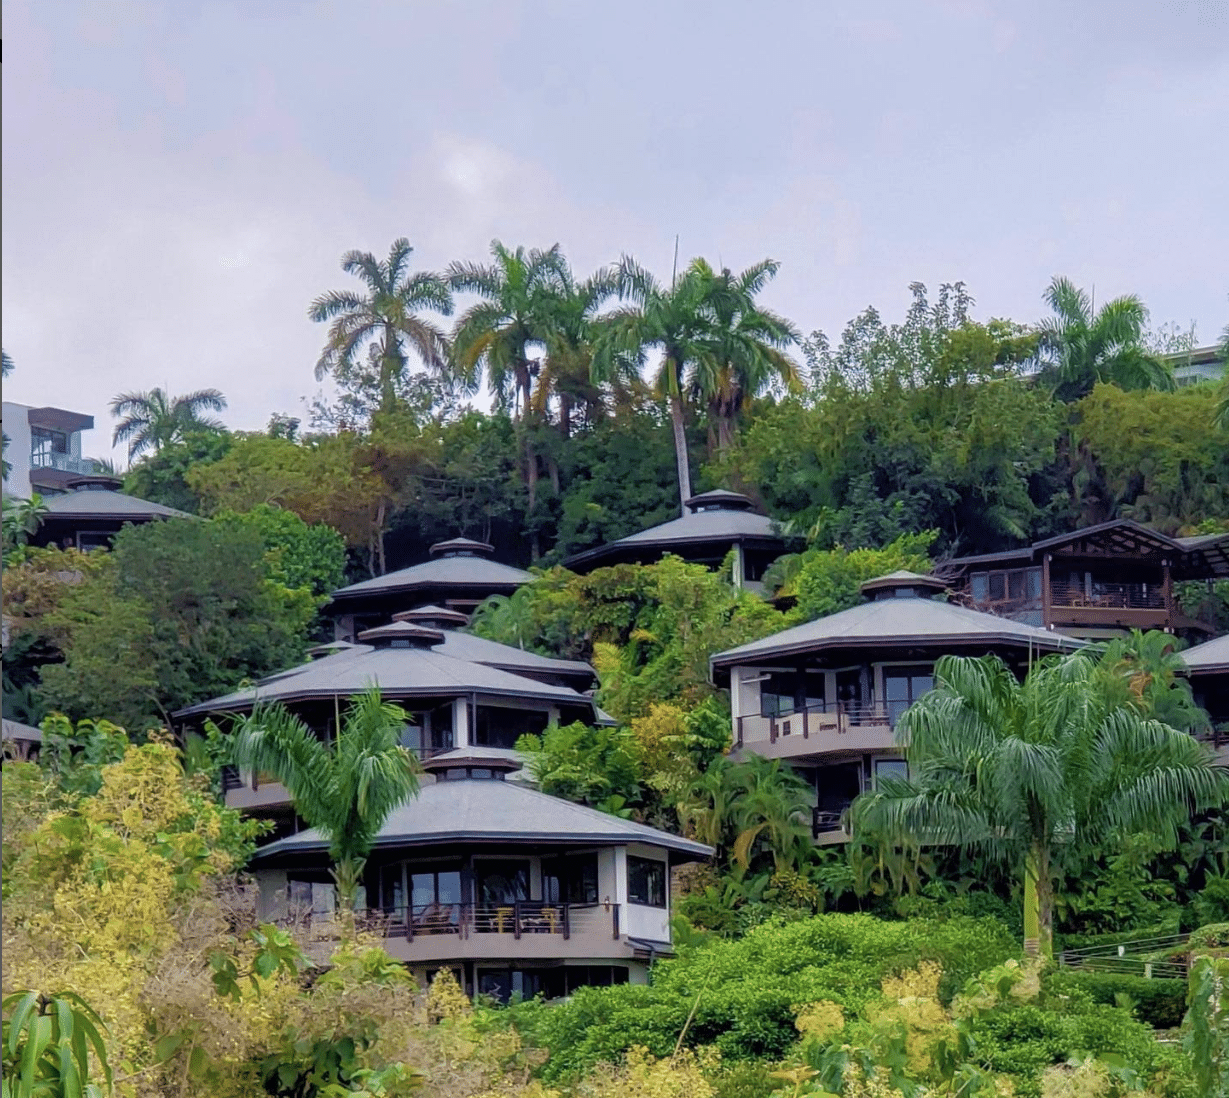 Hoteles de Costa Rica son los mejores de Centroamérica, según Tripadvisor; uno de ellos es el 17 en el mundo